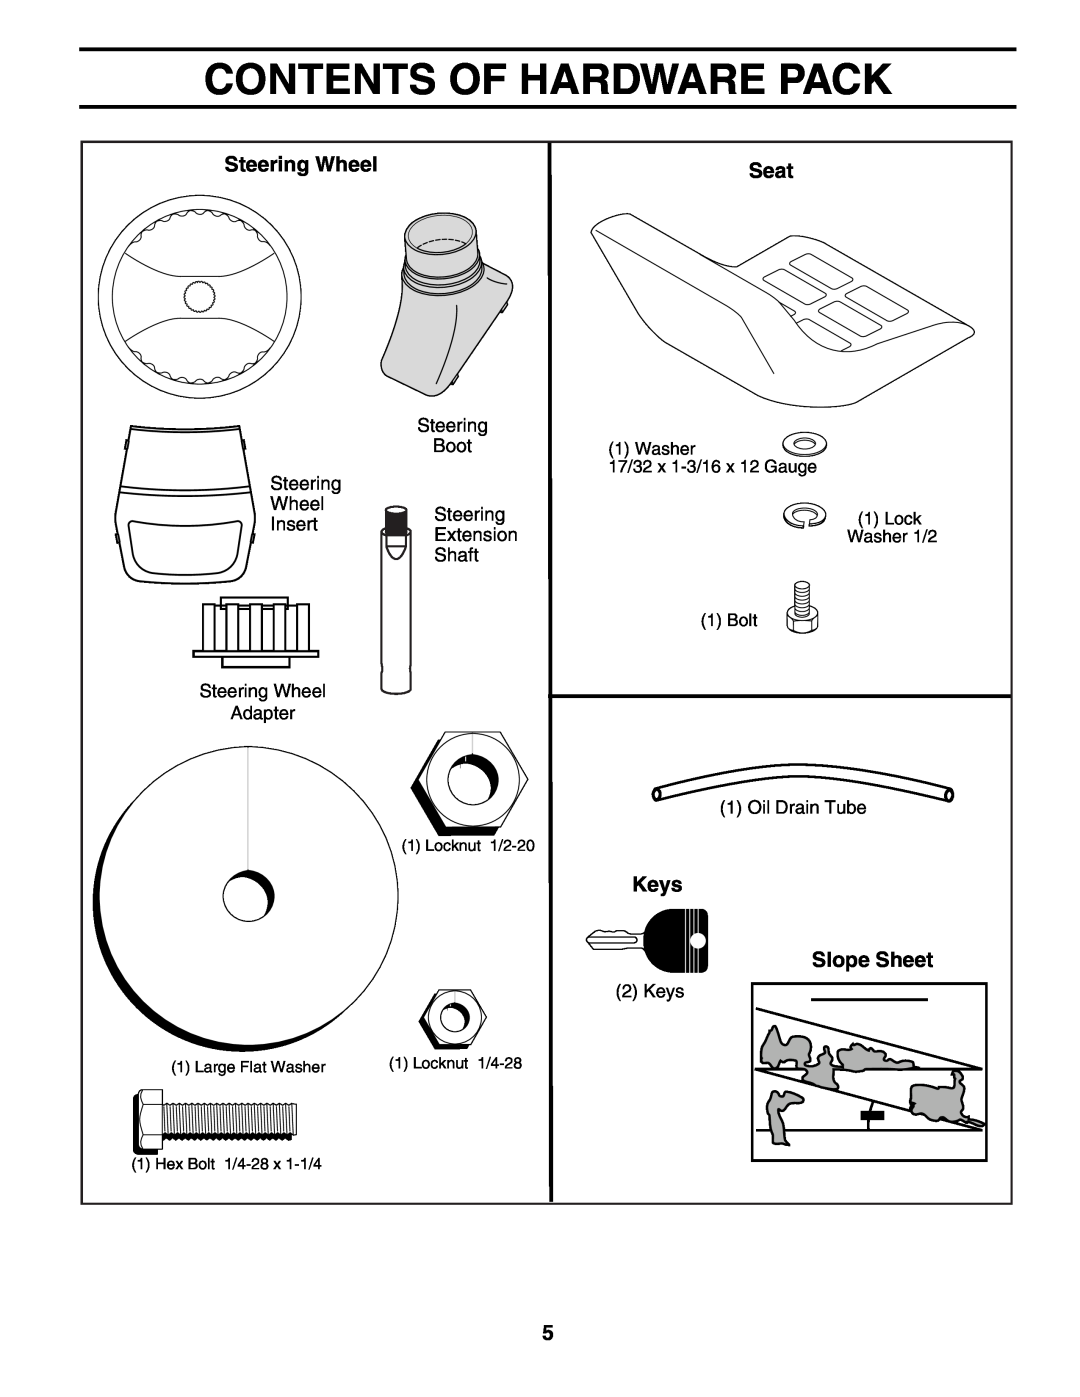 Poulan PO1842STA manual Contents Of Hardware Pack, Steering Wheel, Seat, Keys, Slope Sheet 